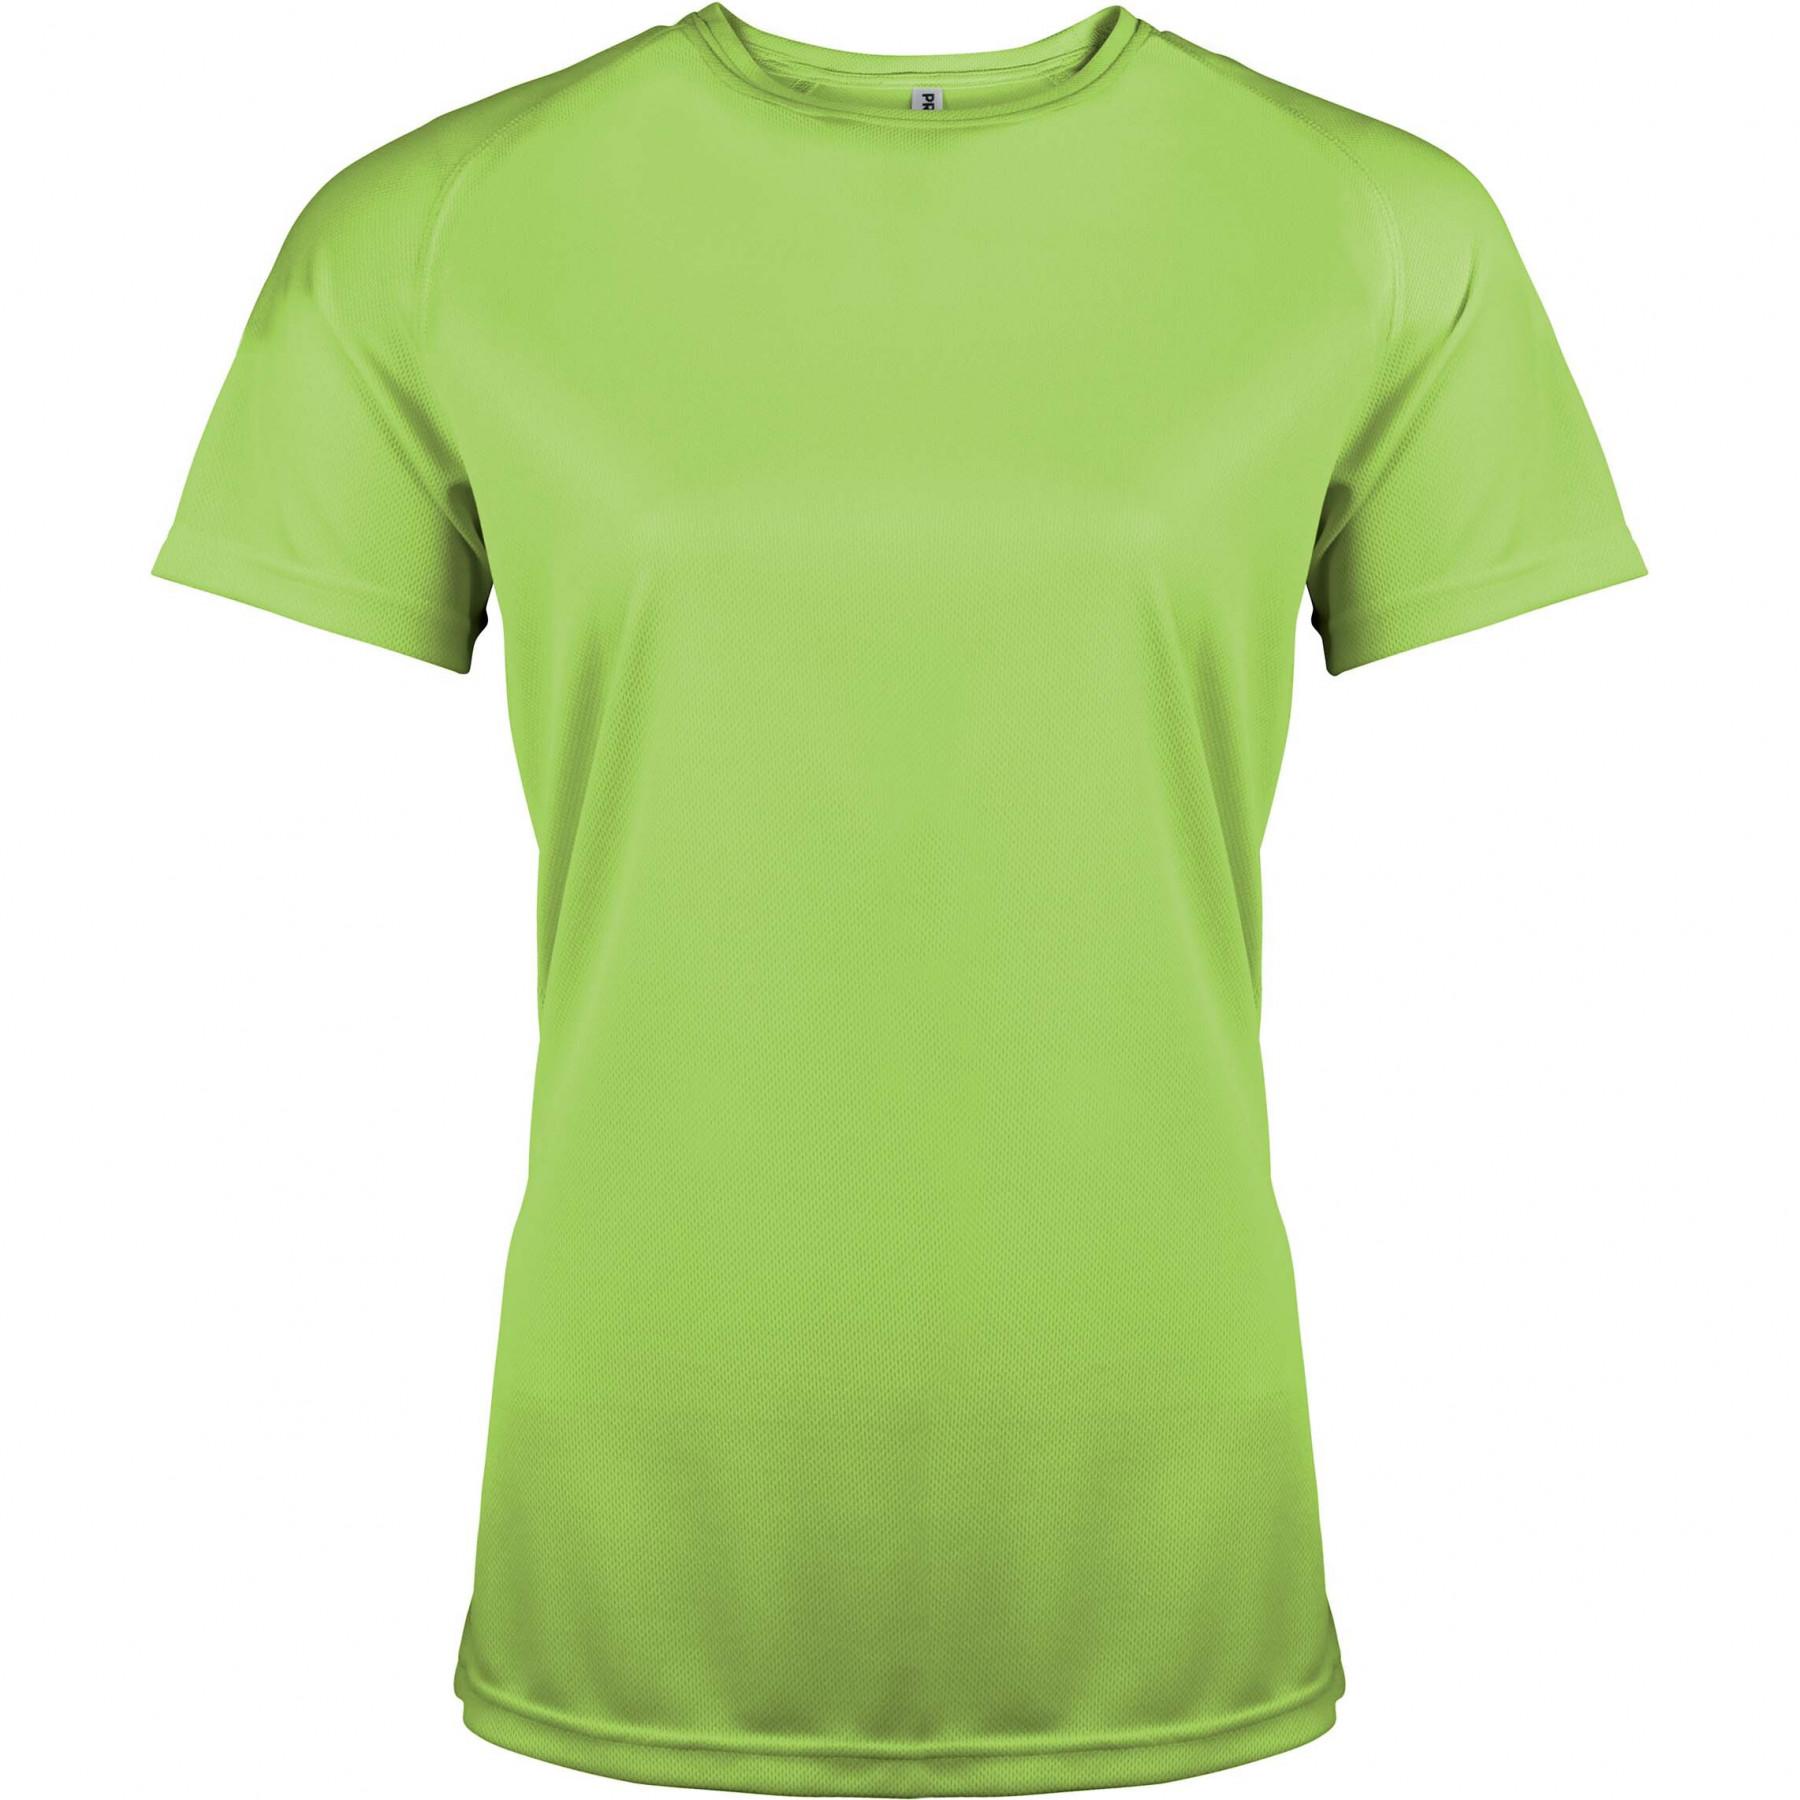 Kurzarm-T-Shirt für Frauen Proact Sport